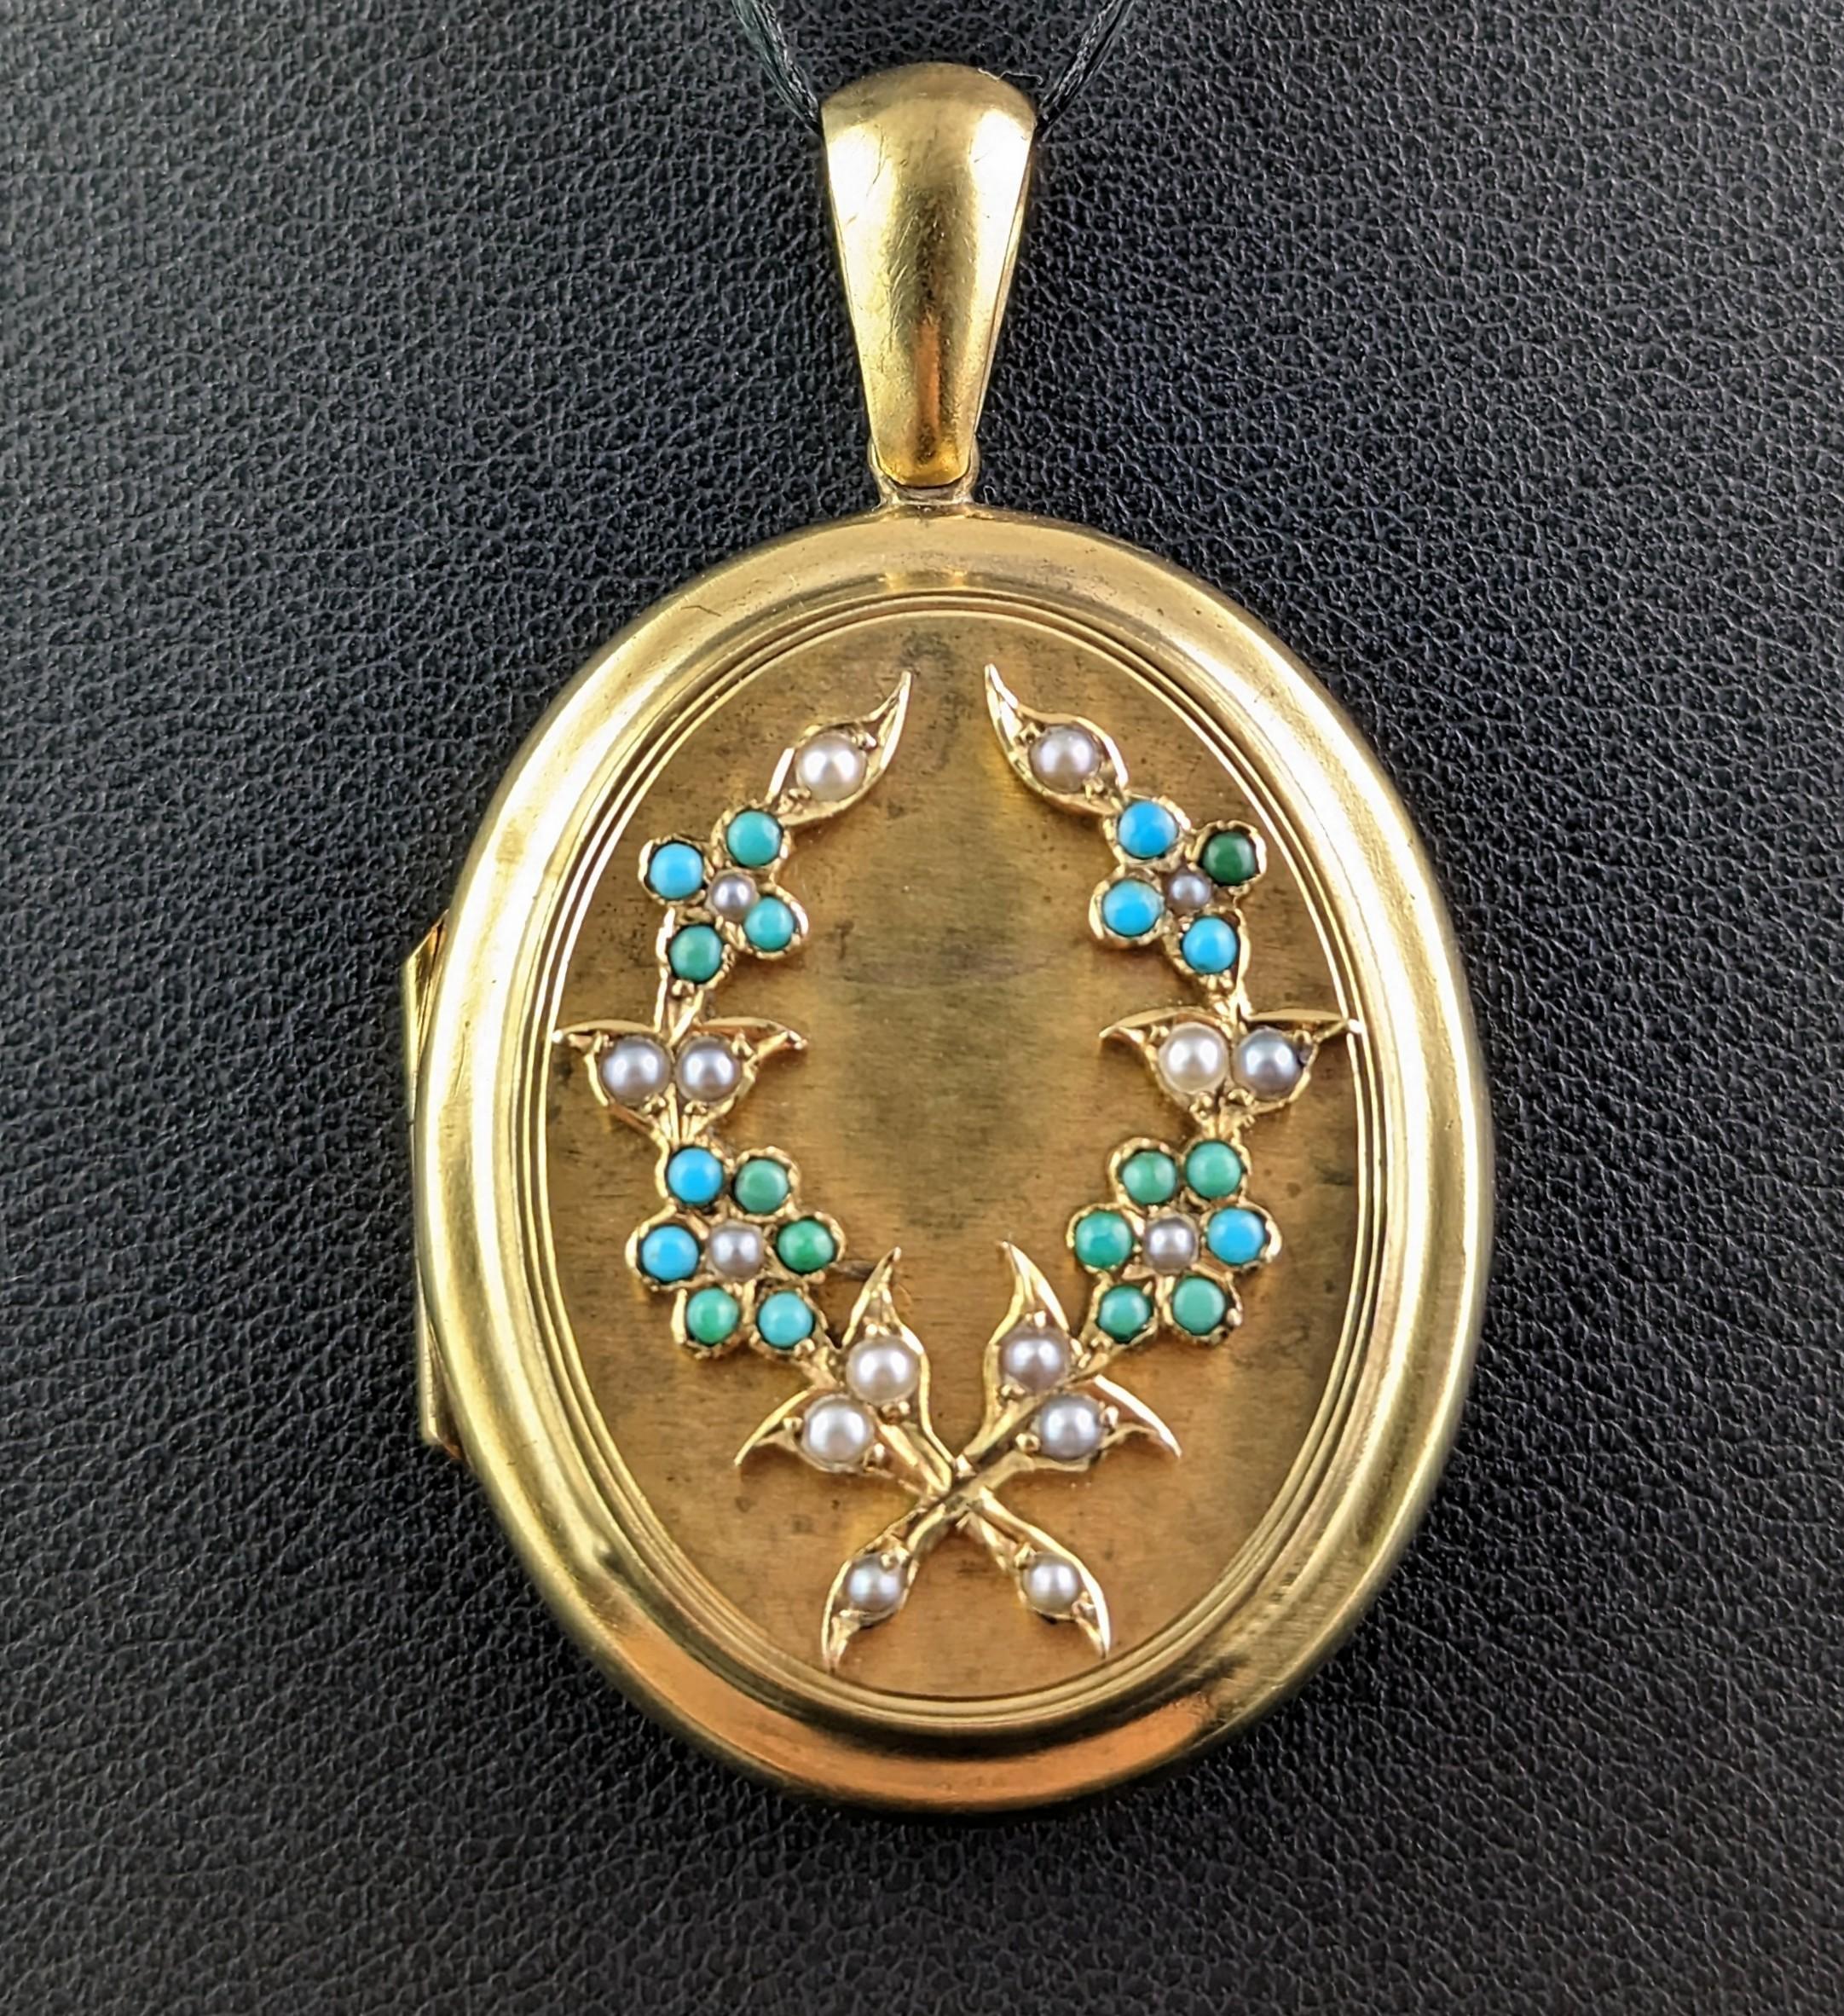 Ce magnifique médaillon ancien en or 15kt, turquoise et perles est vraiment une pièce très spéciale et sentimentale.

Riche or jaune 15kt vieilli avec une jolie couronne de fleurs myosotis sur le devant, ornée de minuscules perles de rocaille